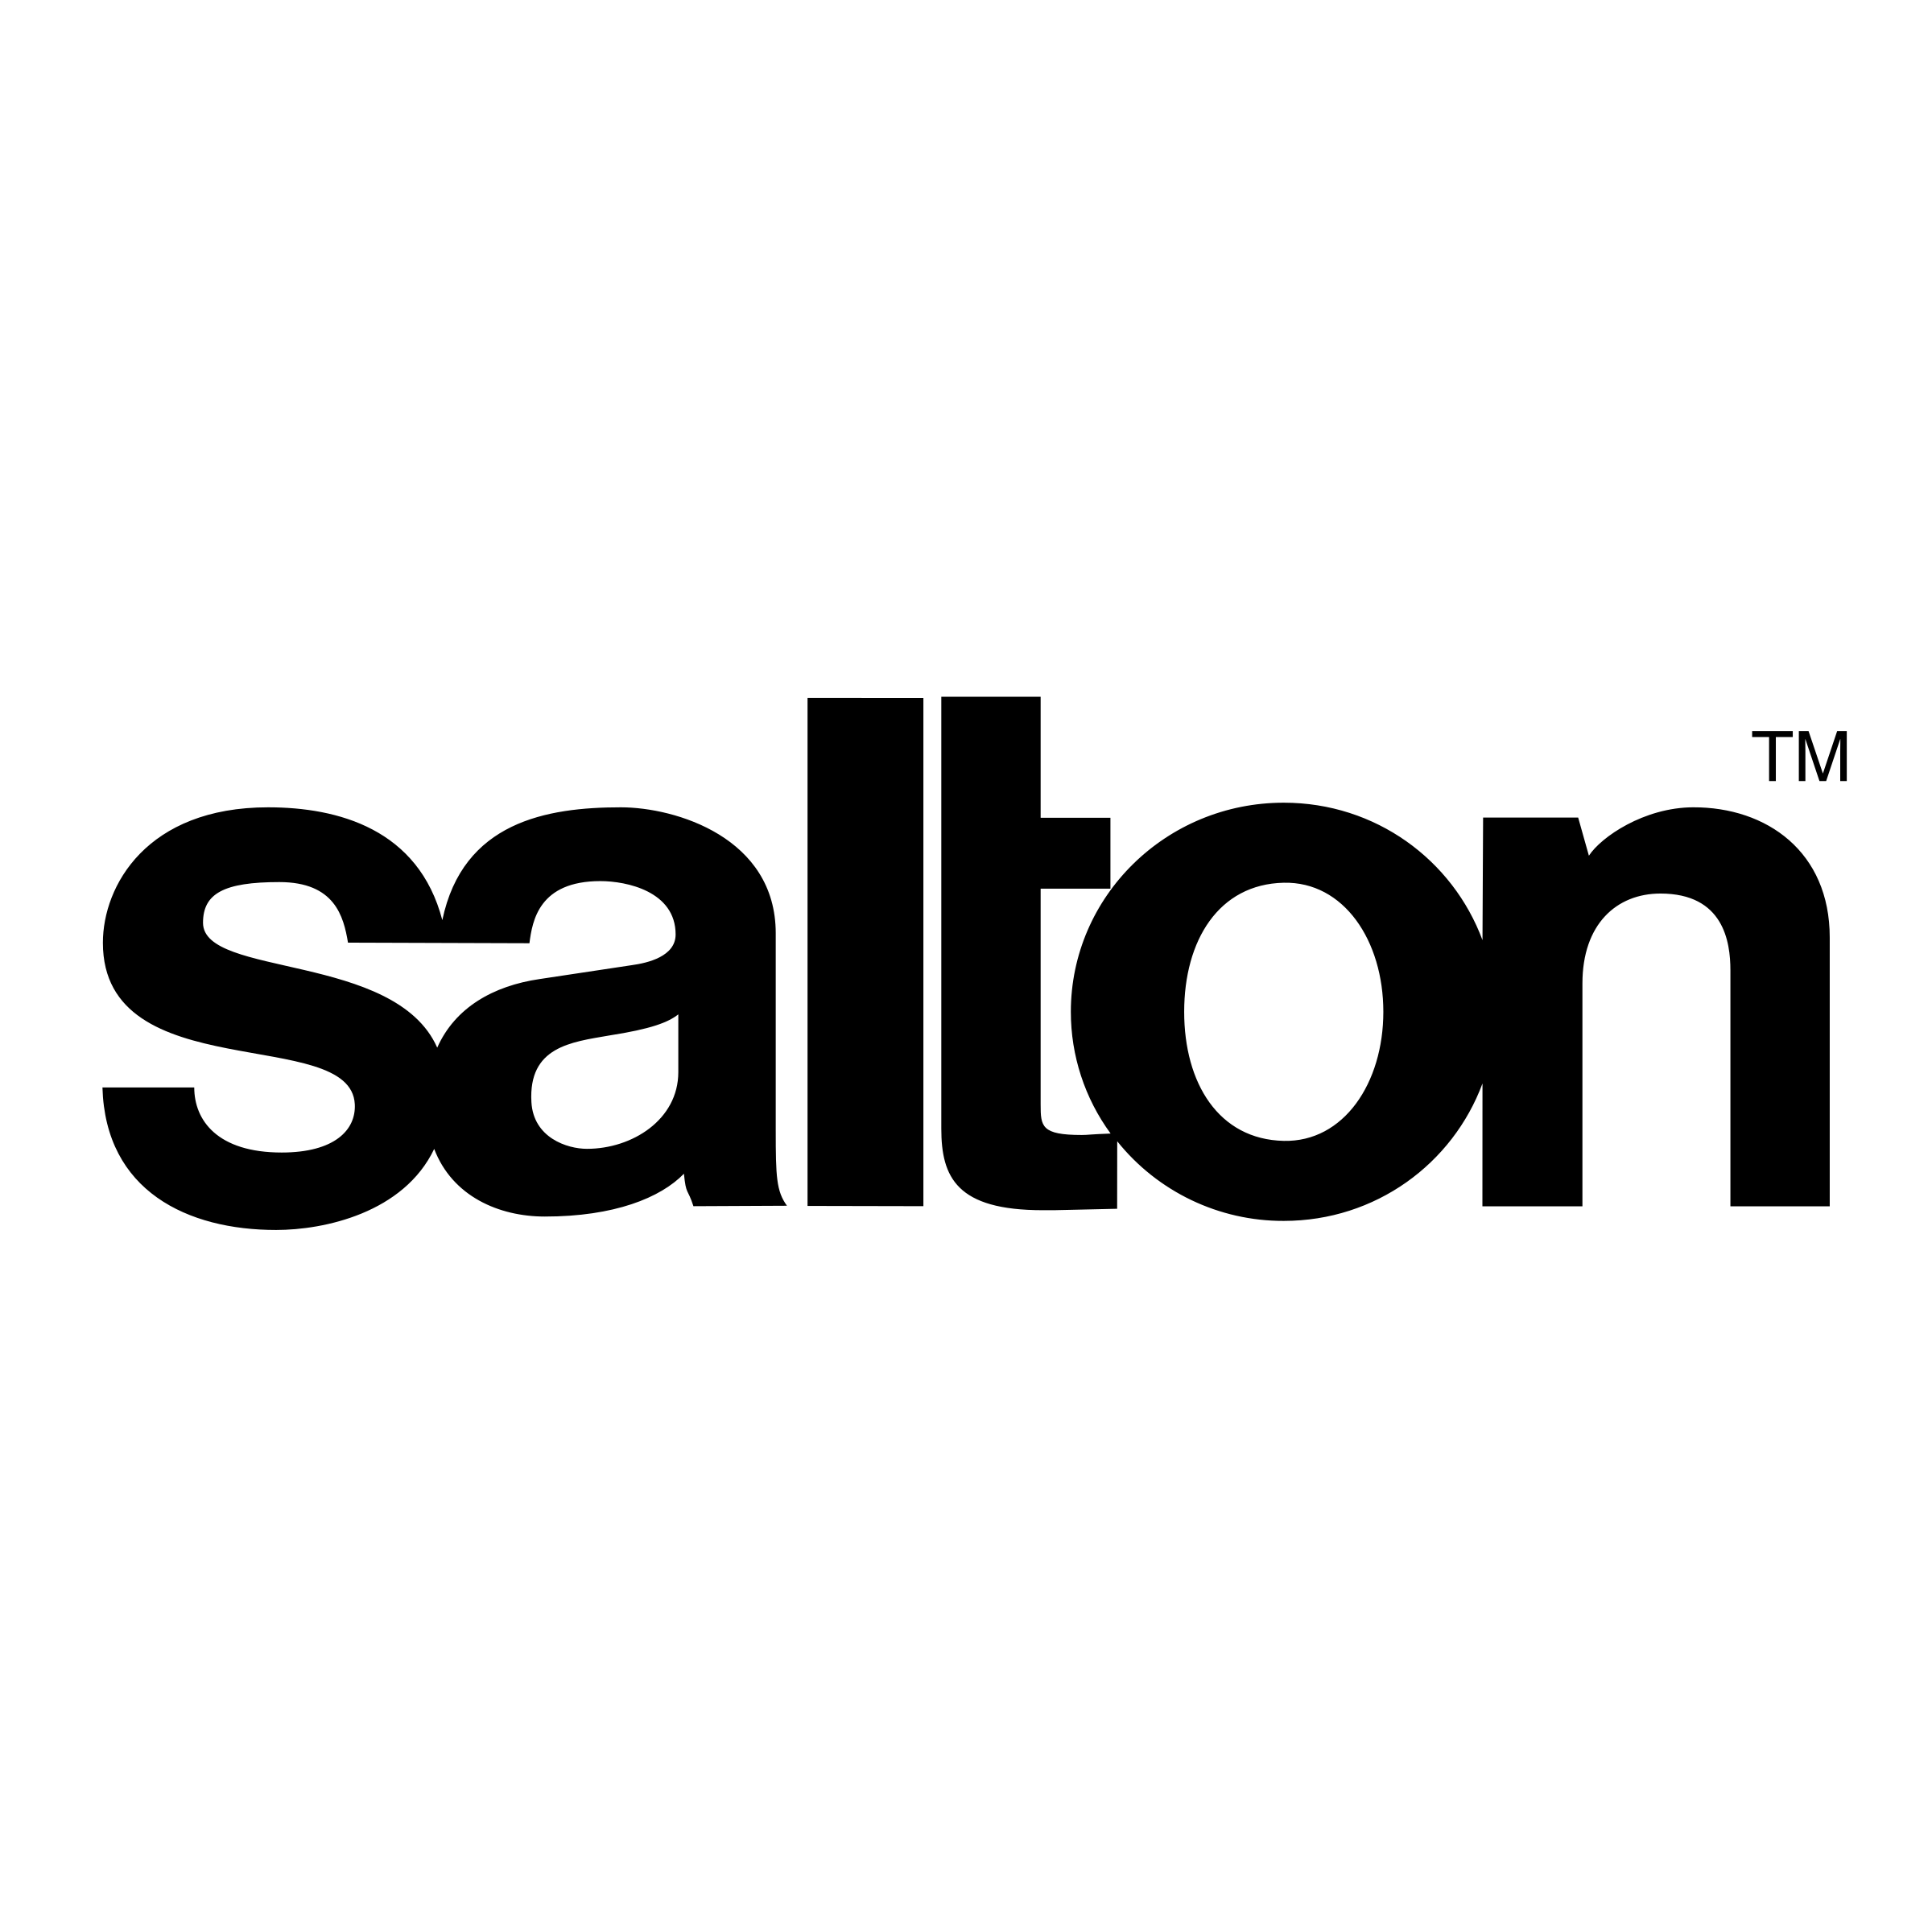 Skoal Logo - Salton Logo PNG Transparent & SVG Vector - Freebie Supply